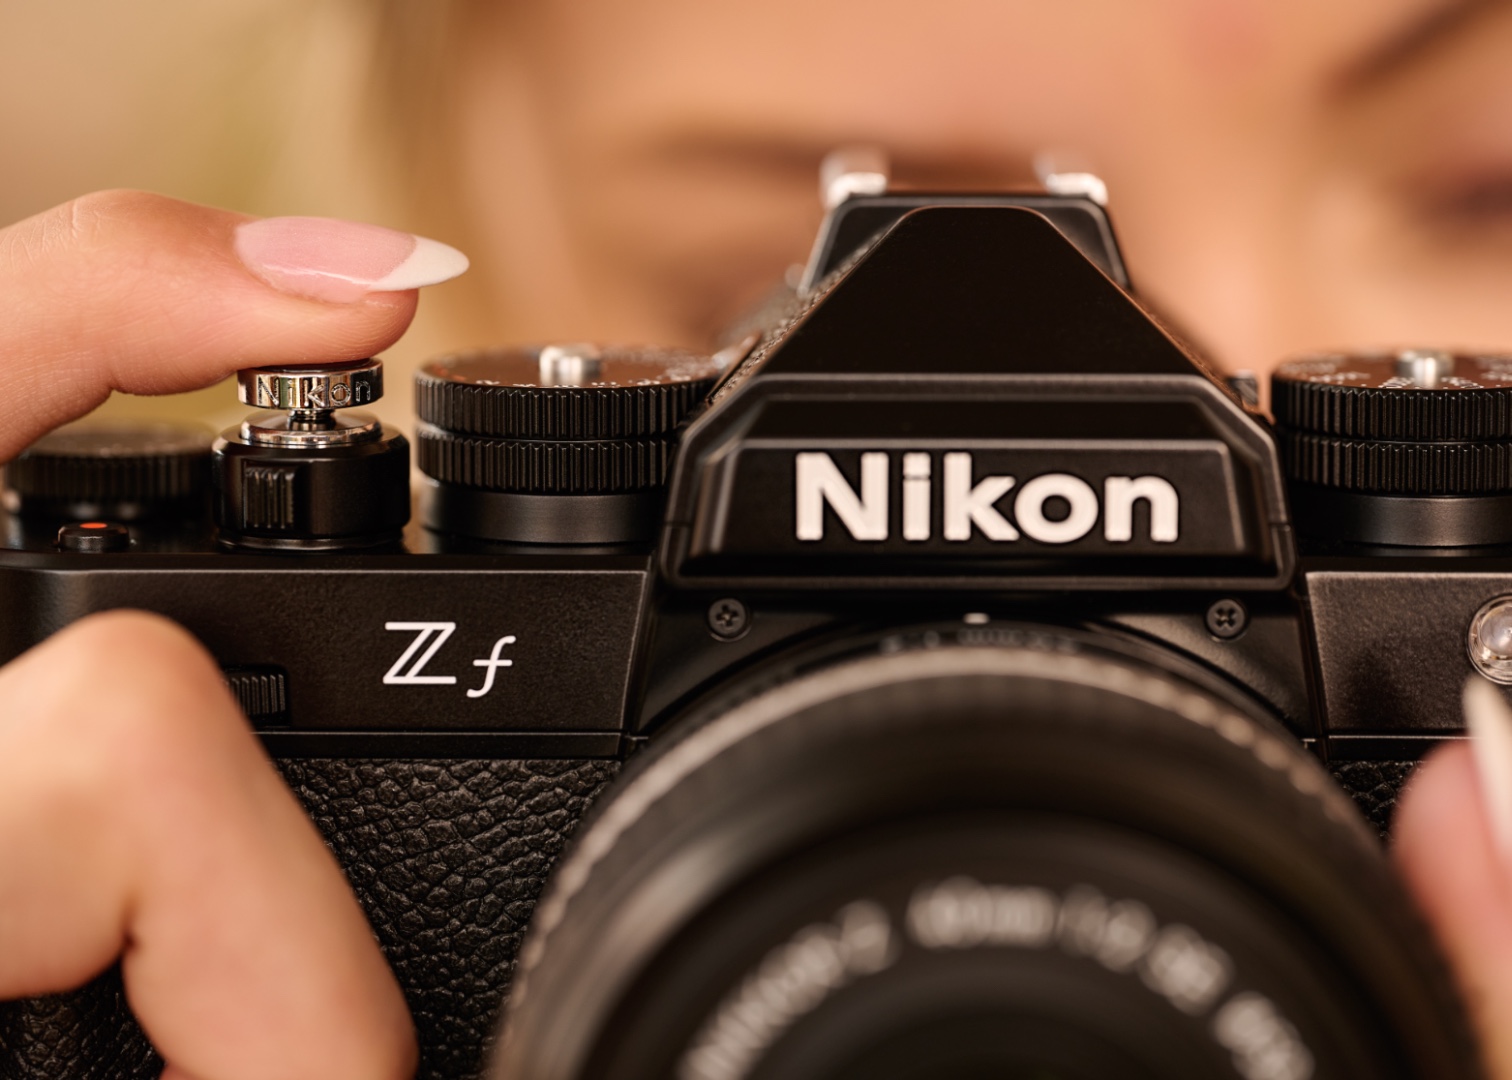 Le Nouveau Nikon Zf. Une performance inspirante.